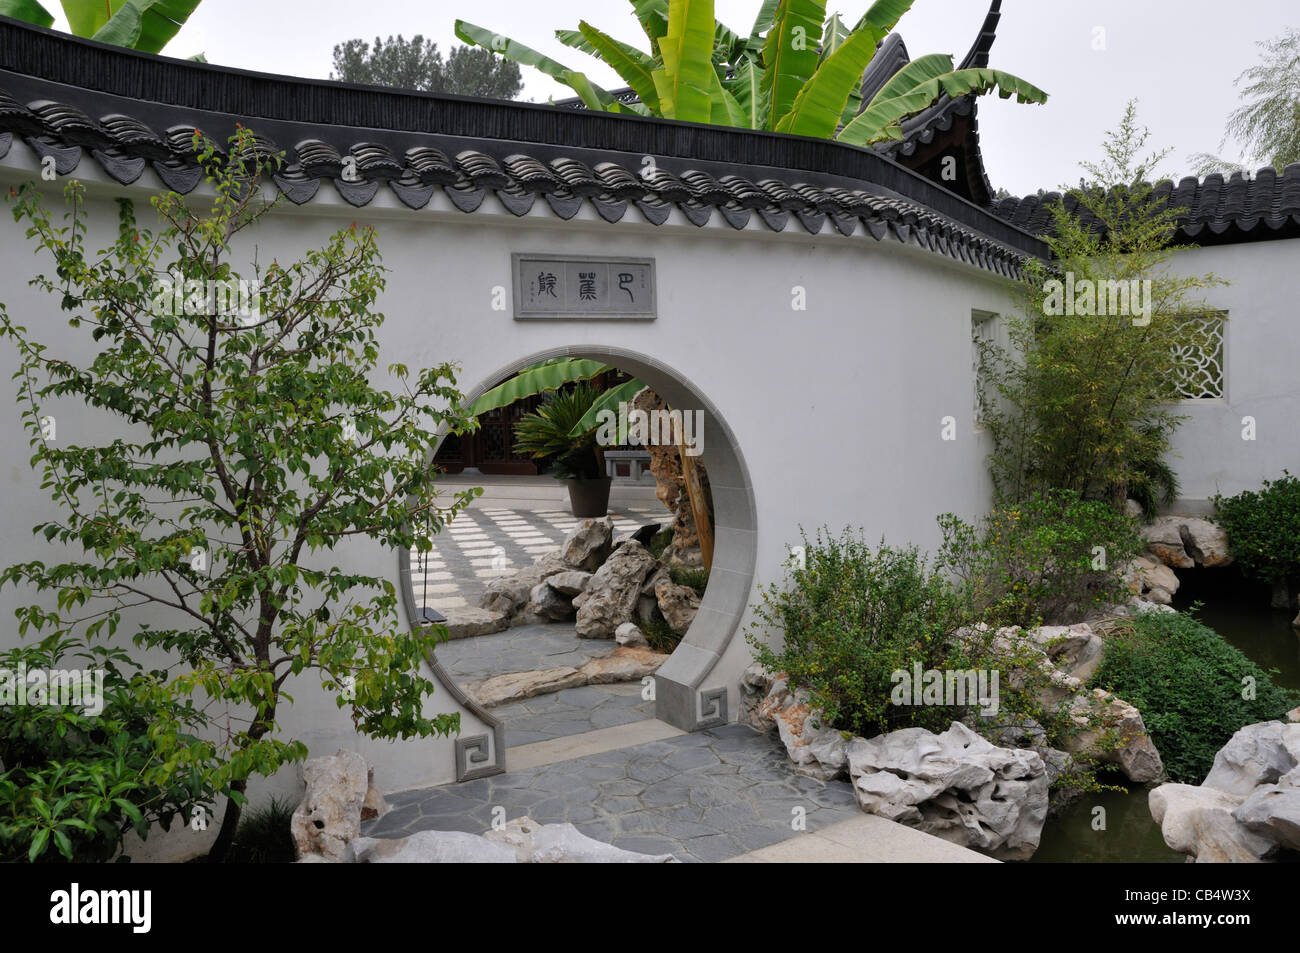 Lune ouverture dans un mur dans le jardin chinois, le Jardin botanique de Huntington, San Marino, Californie Banque D'Images